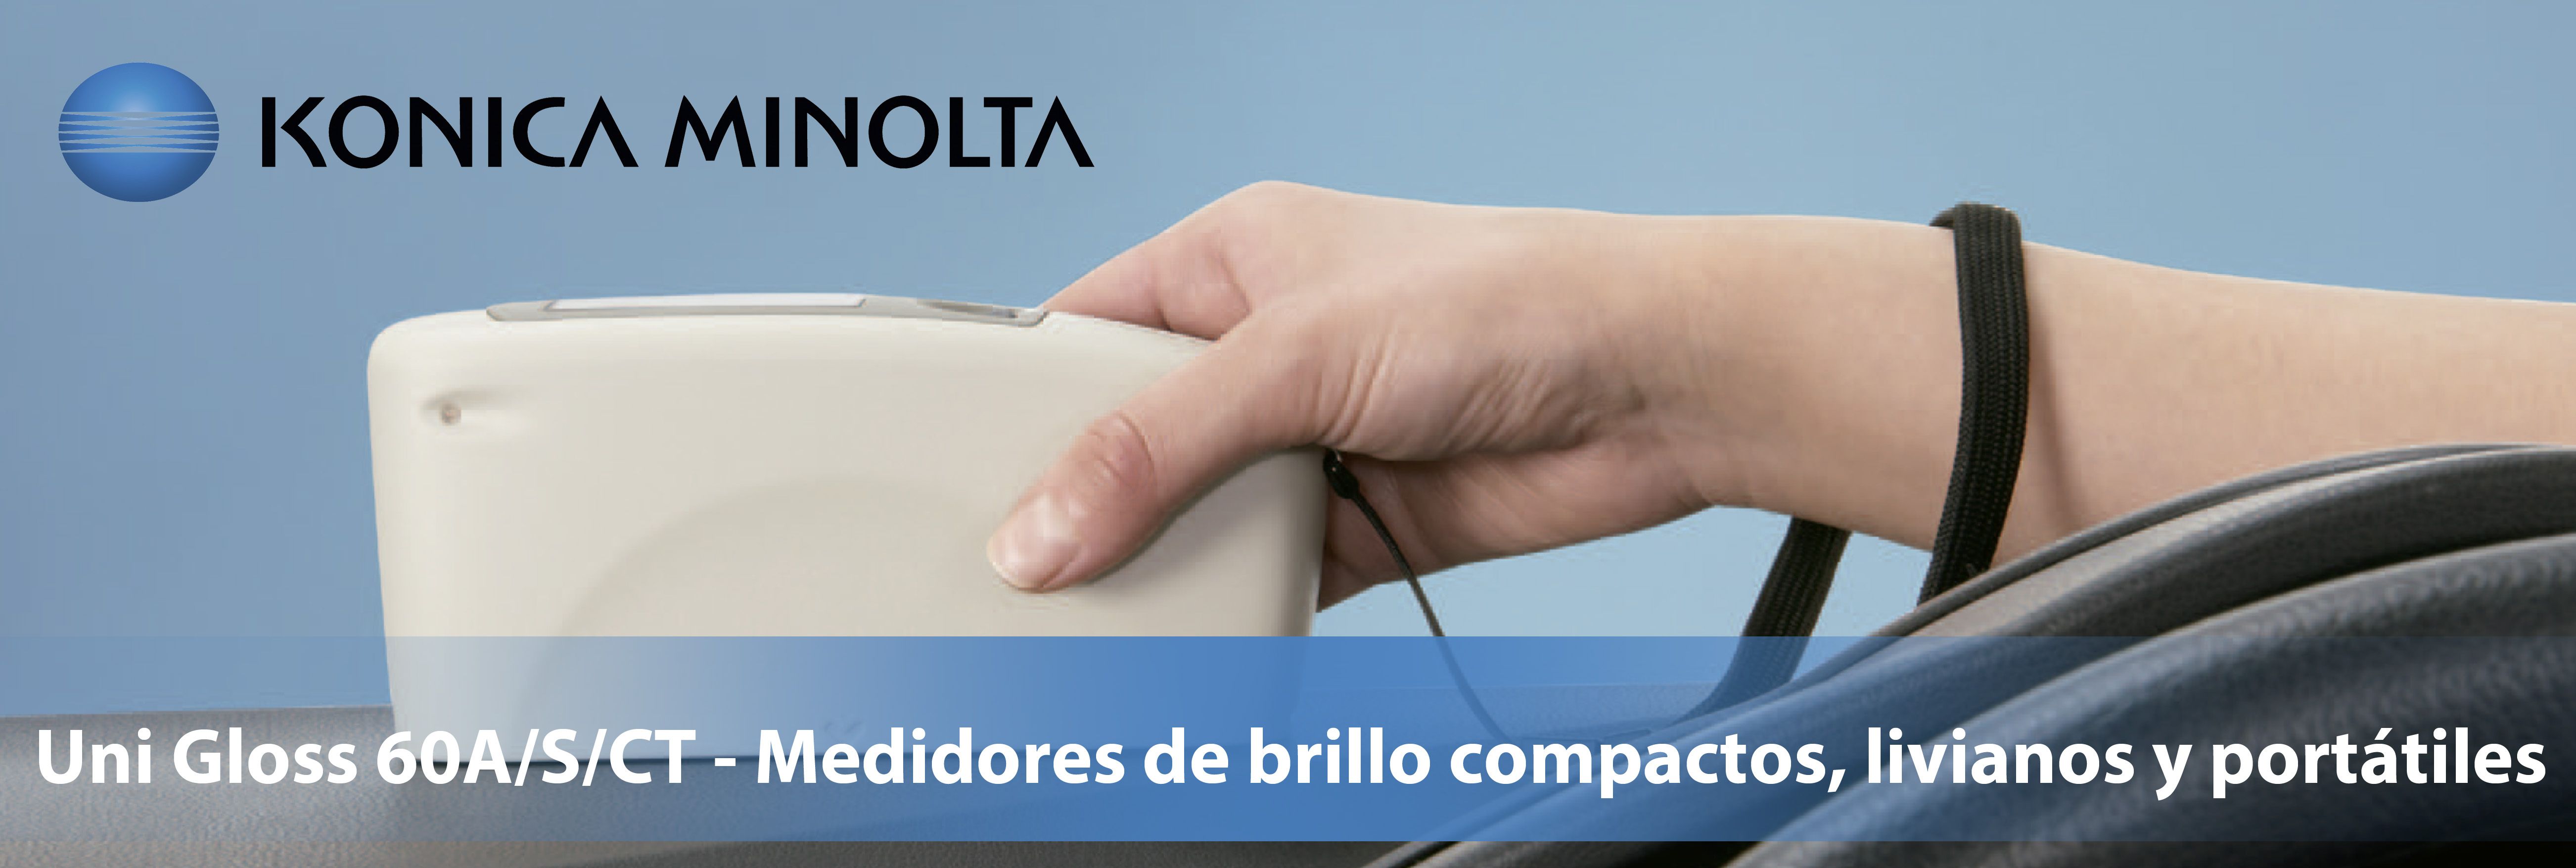 Konica Minolta presenta tres medidores de brillo compactos, livianos y portátiles